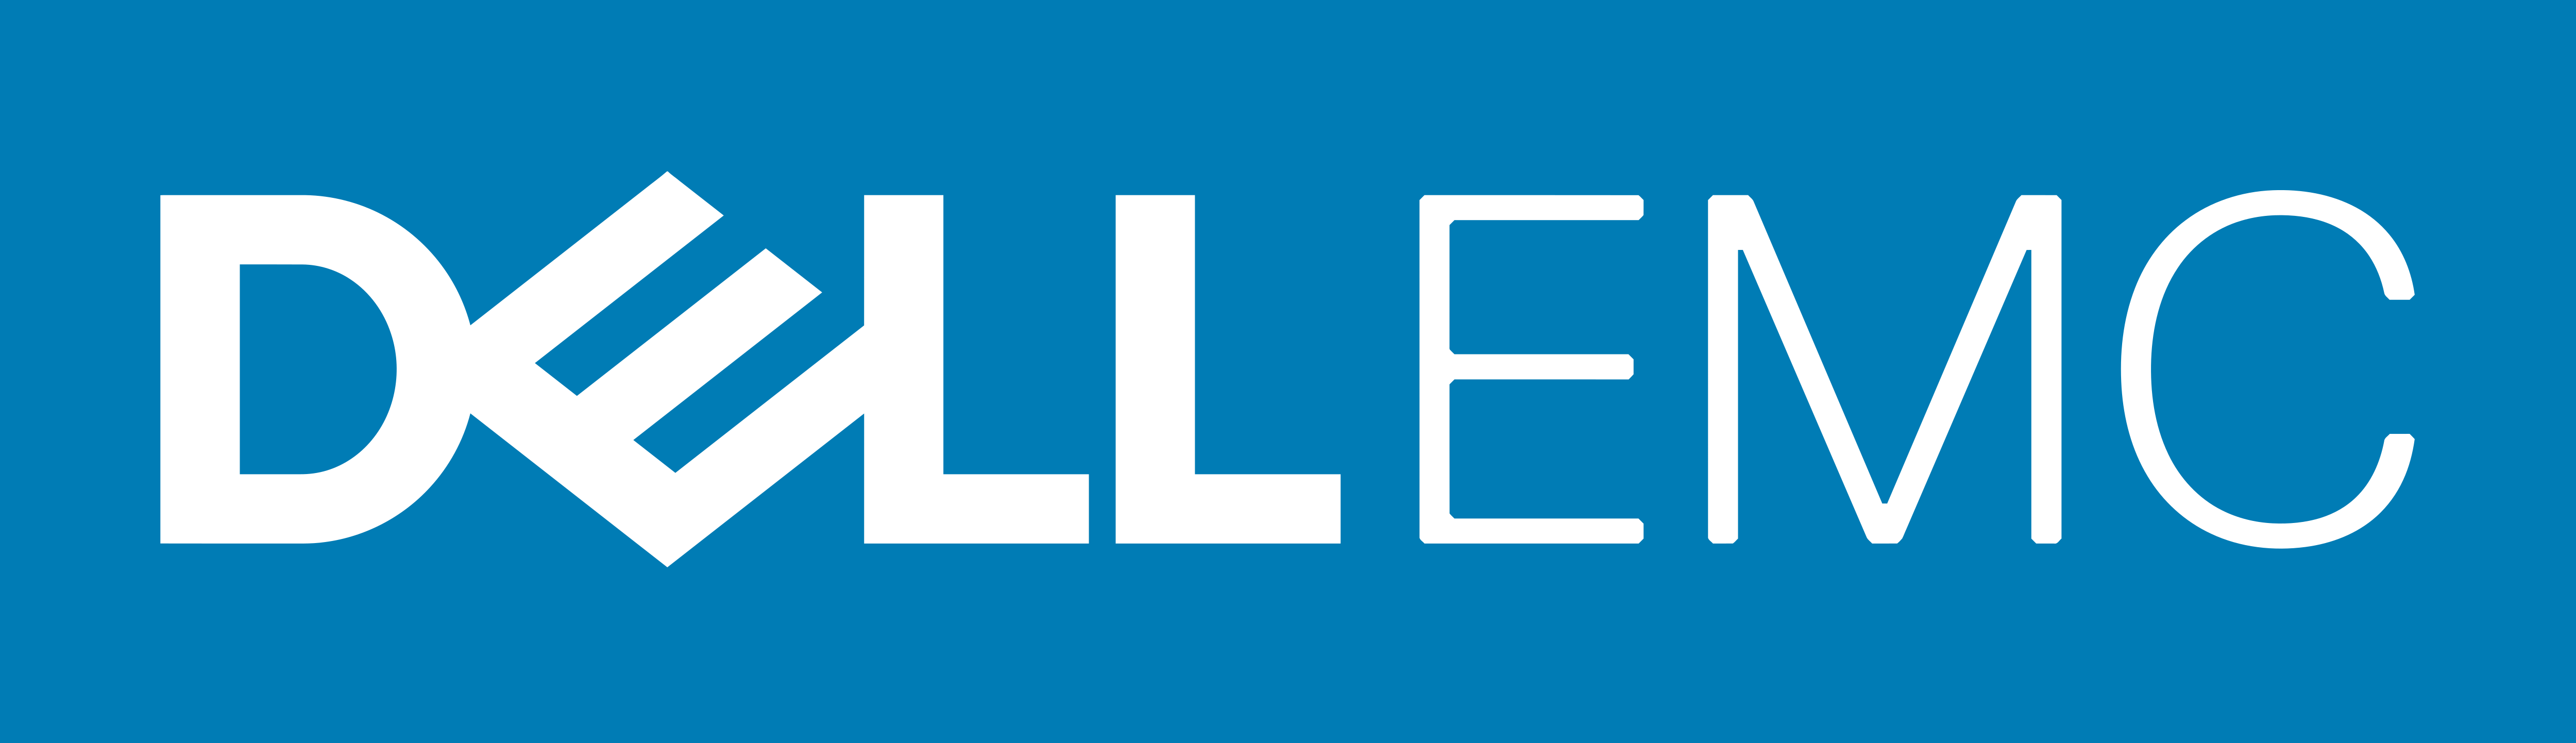 Dell EMC – Logos Download